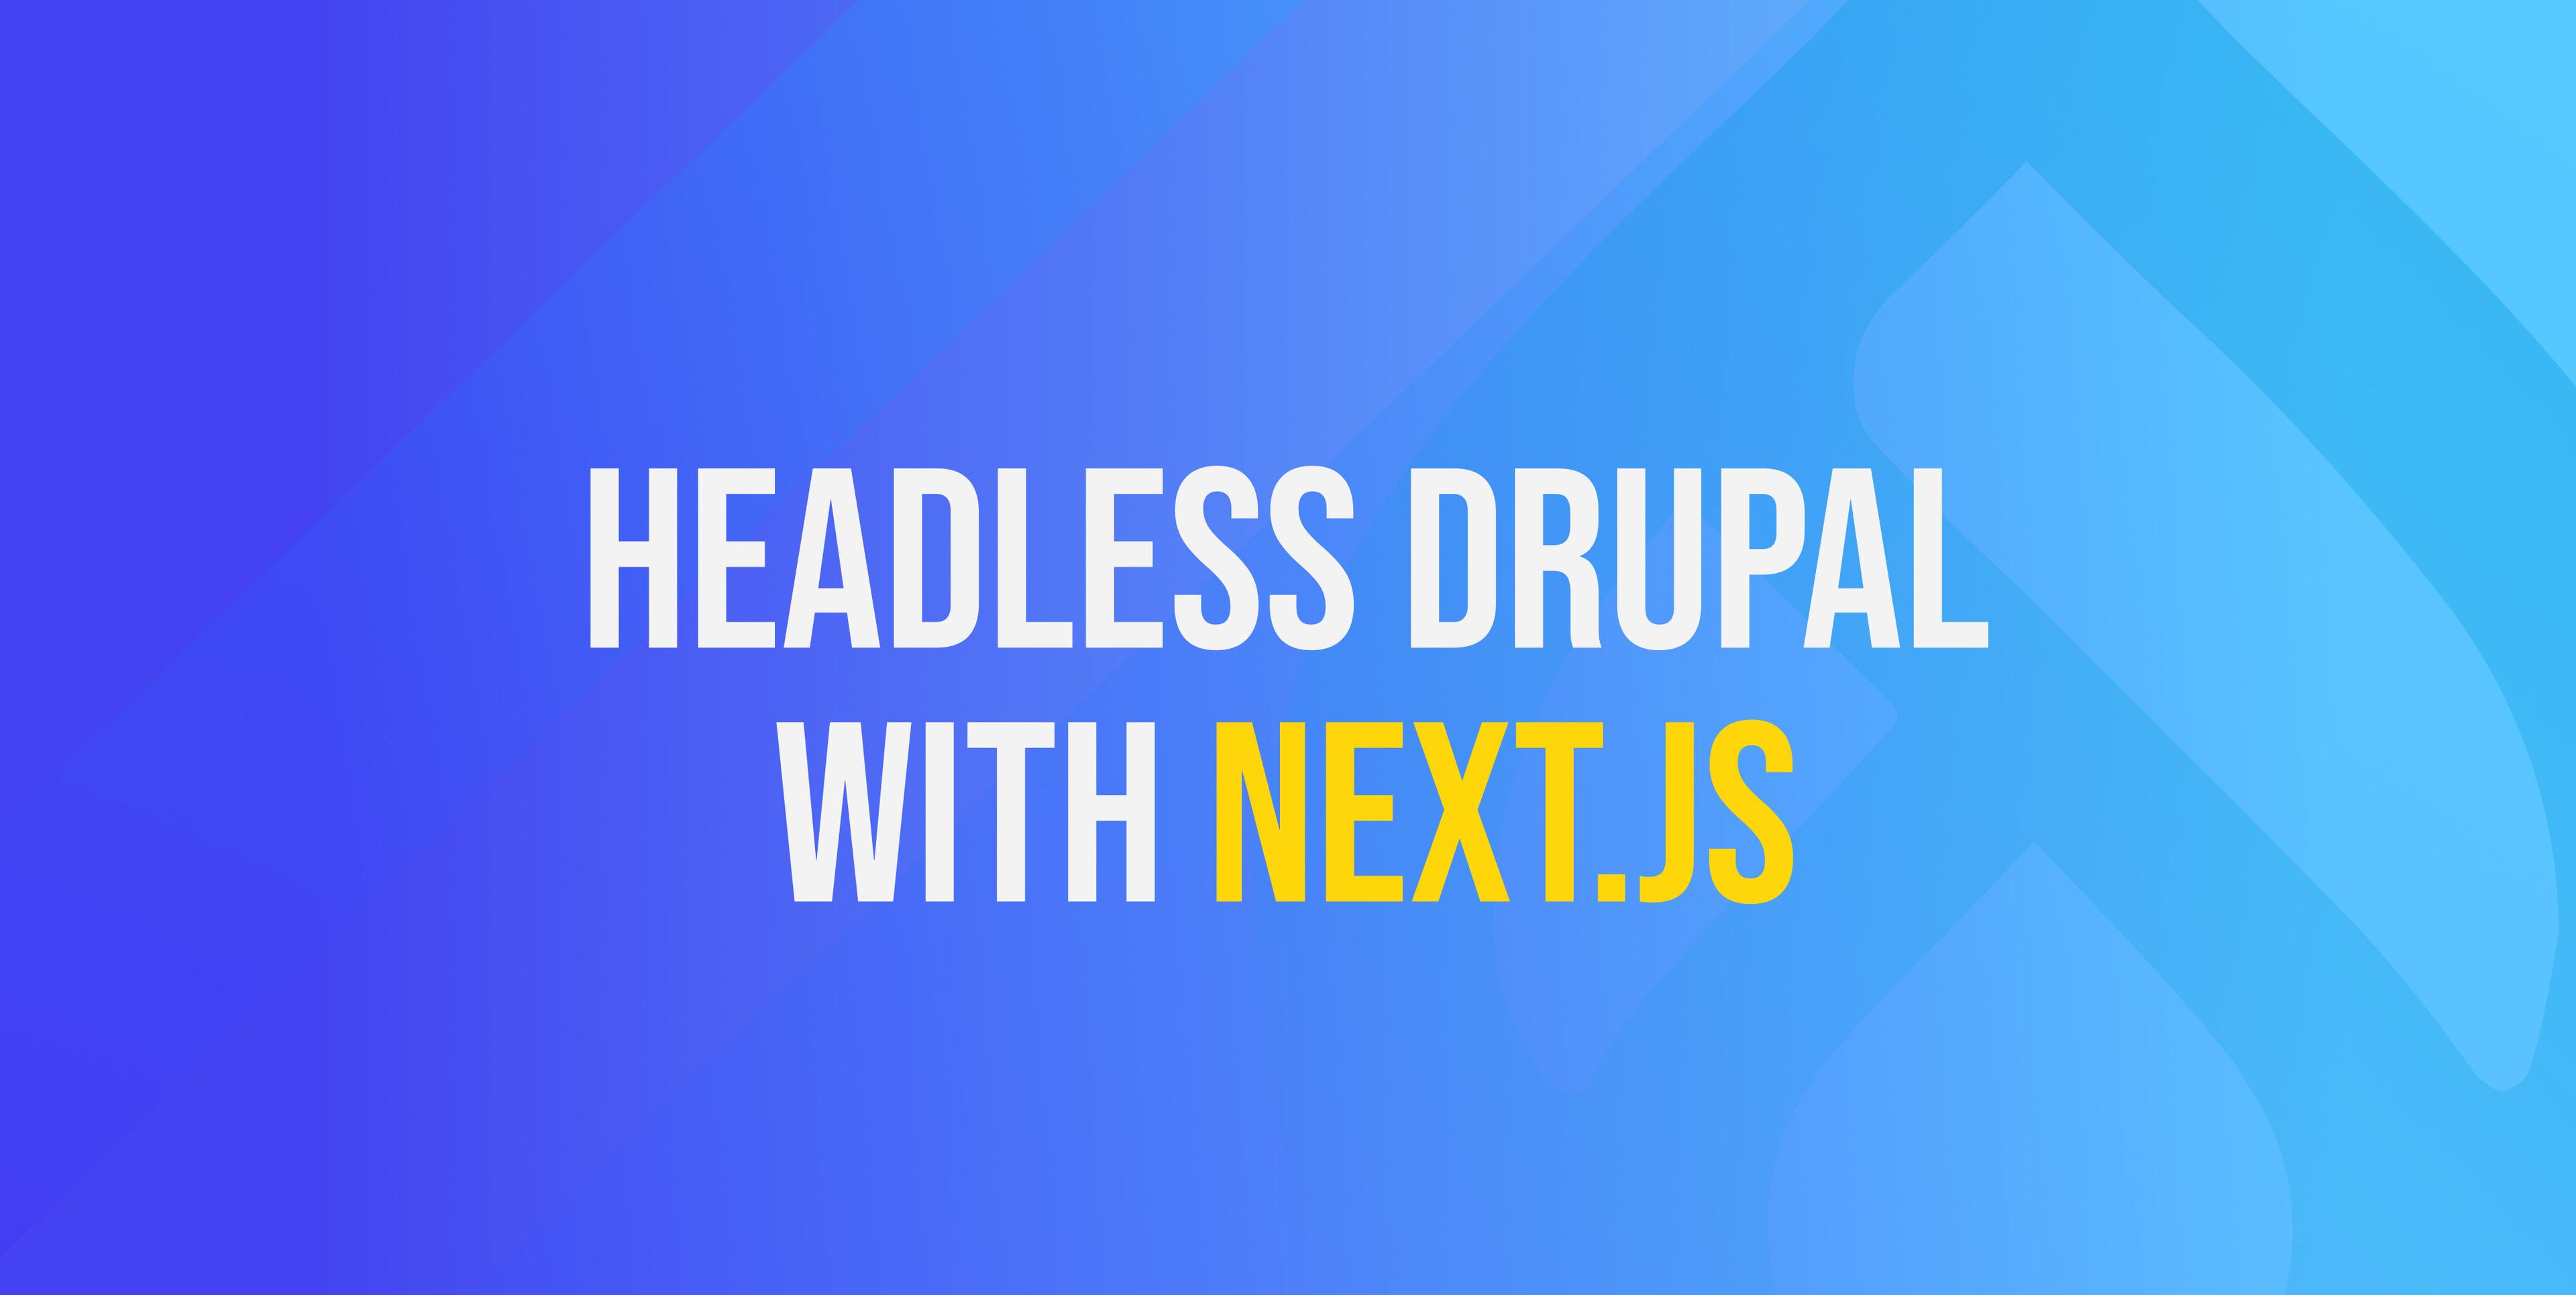 Drupal sans tête avec Next.js - un exemple simple à suivre